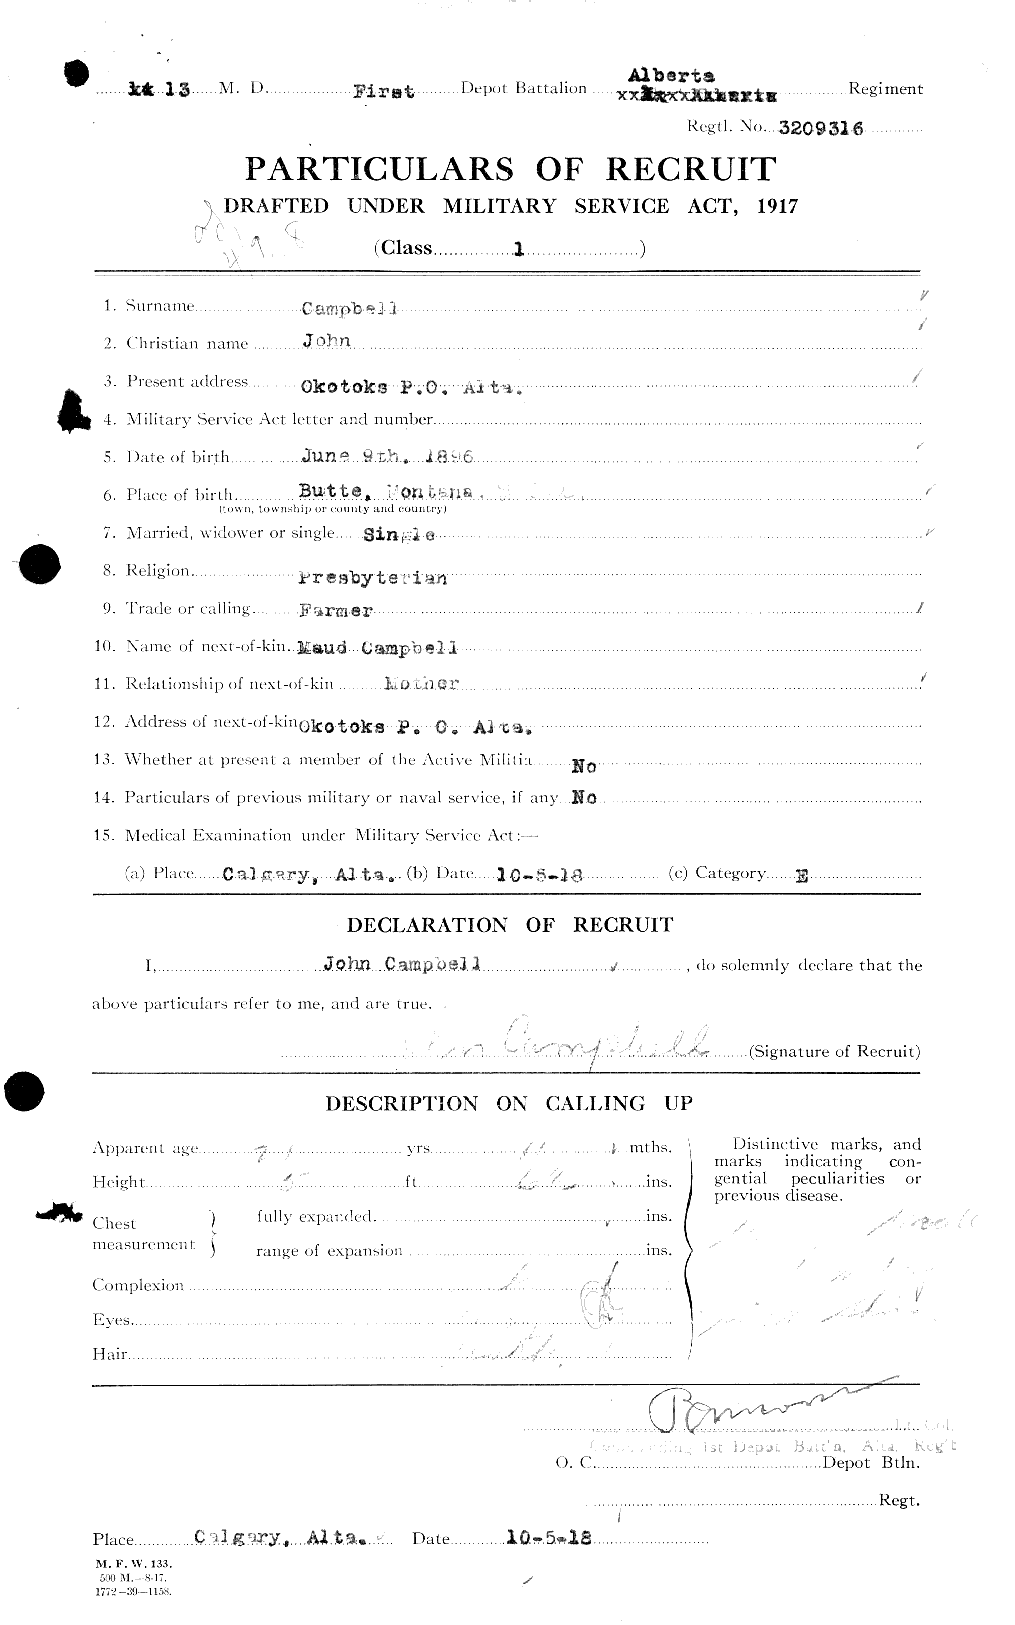 Dossiers du Personnel de la Première Guerre mondiale - CEC 008496a